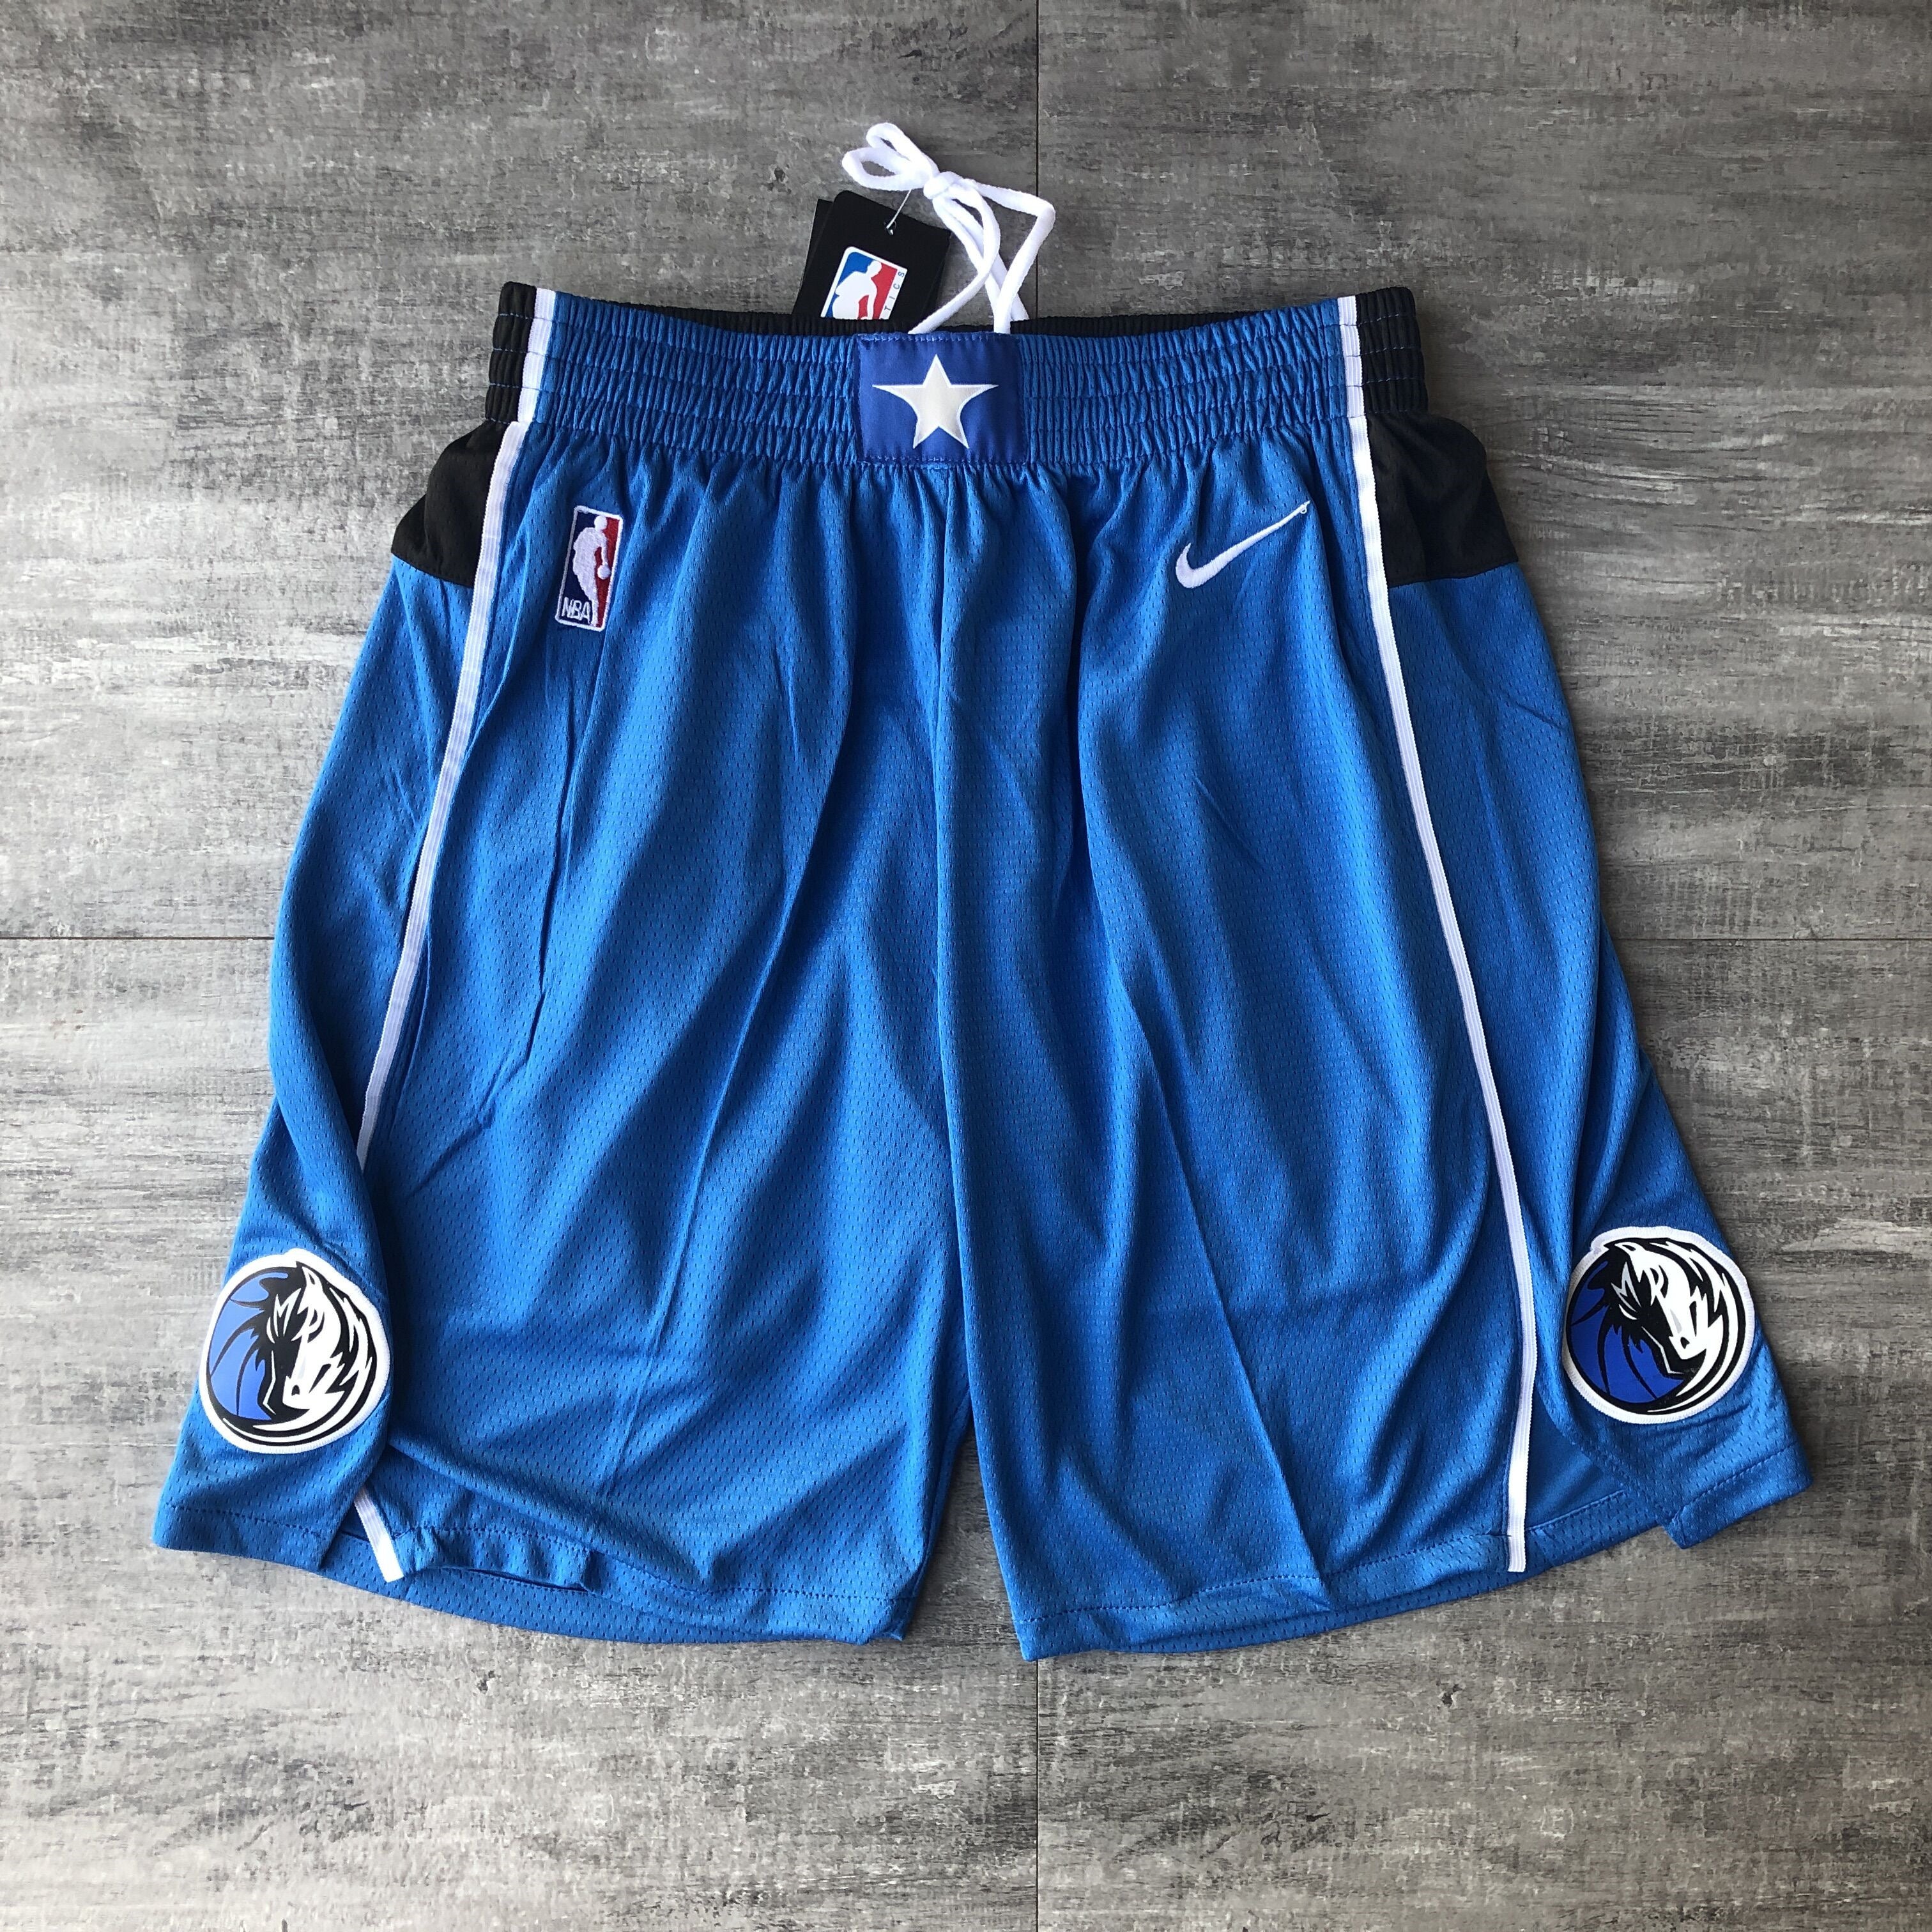 Dallas royal blue shorts